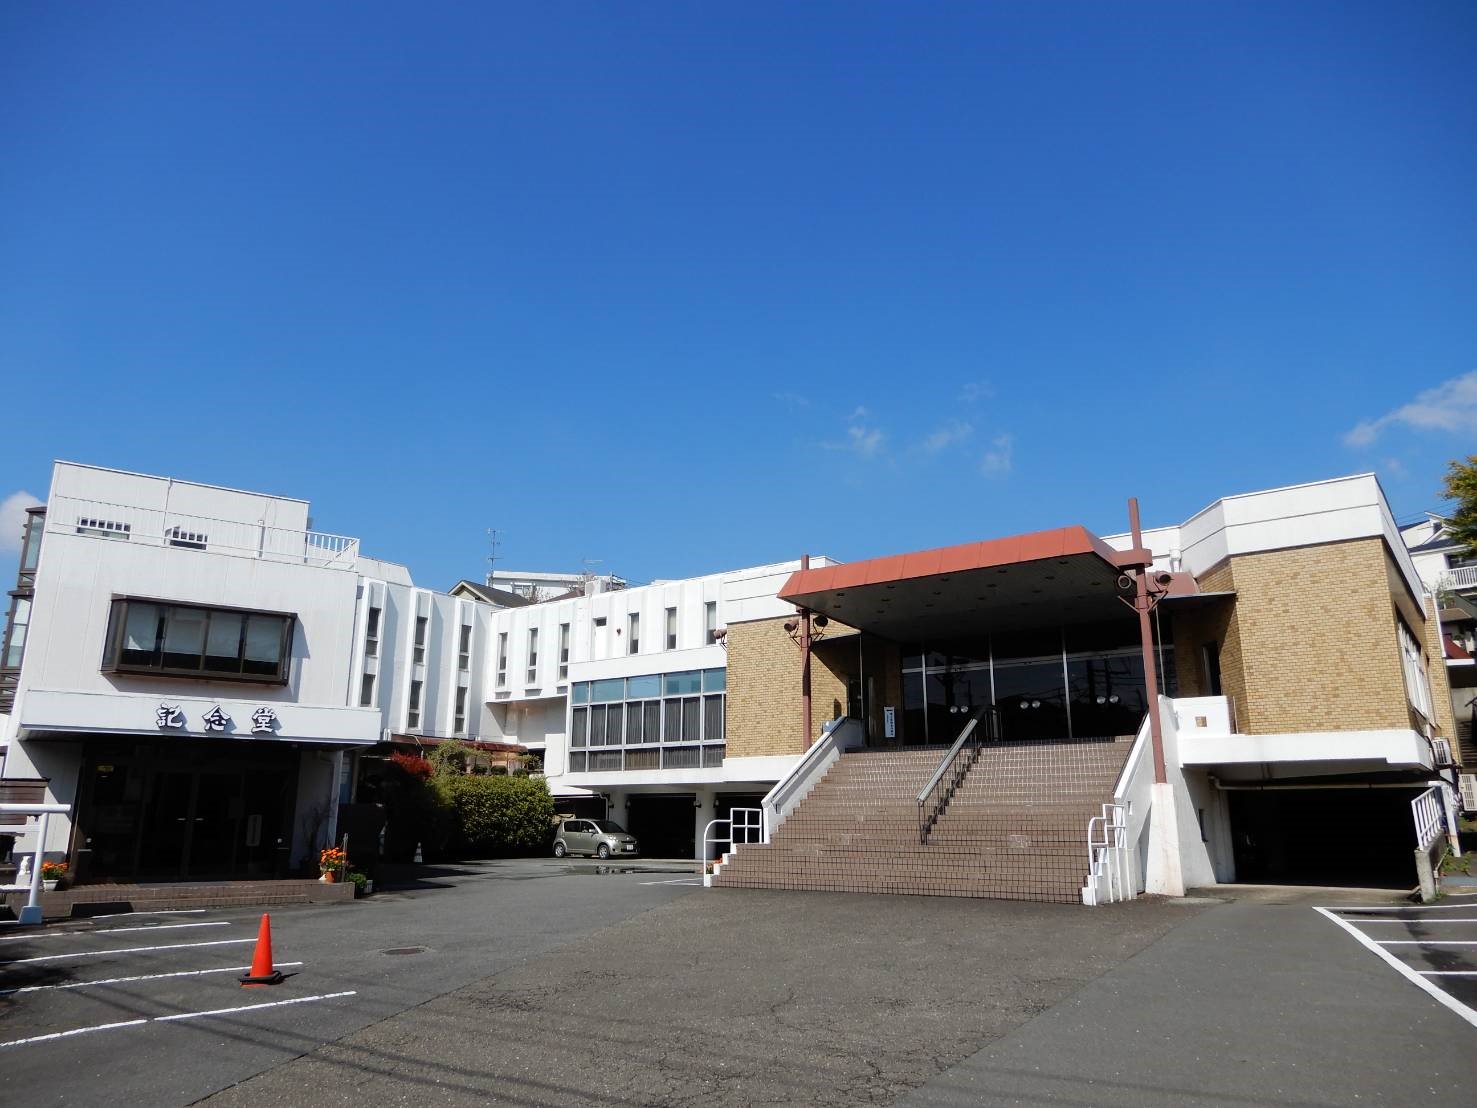 株式会社横浜富士霊廟 株式取得完了のお知らせ 株式会社ビーロットのプレスリリース